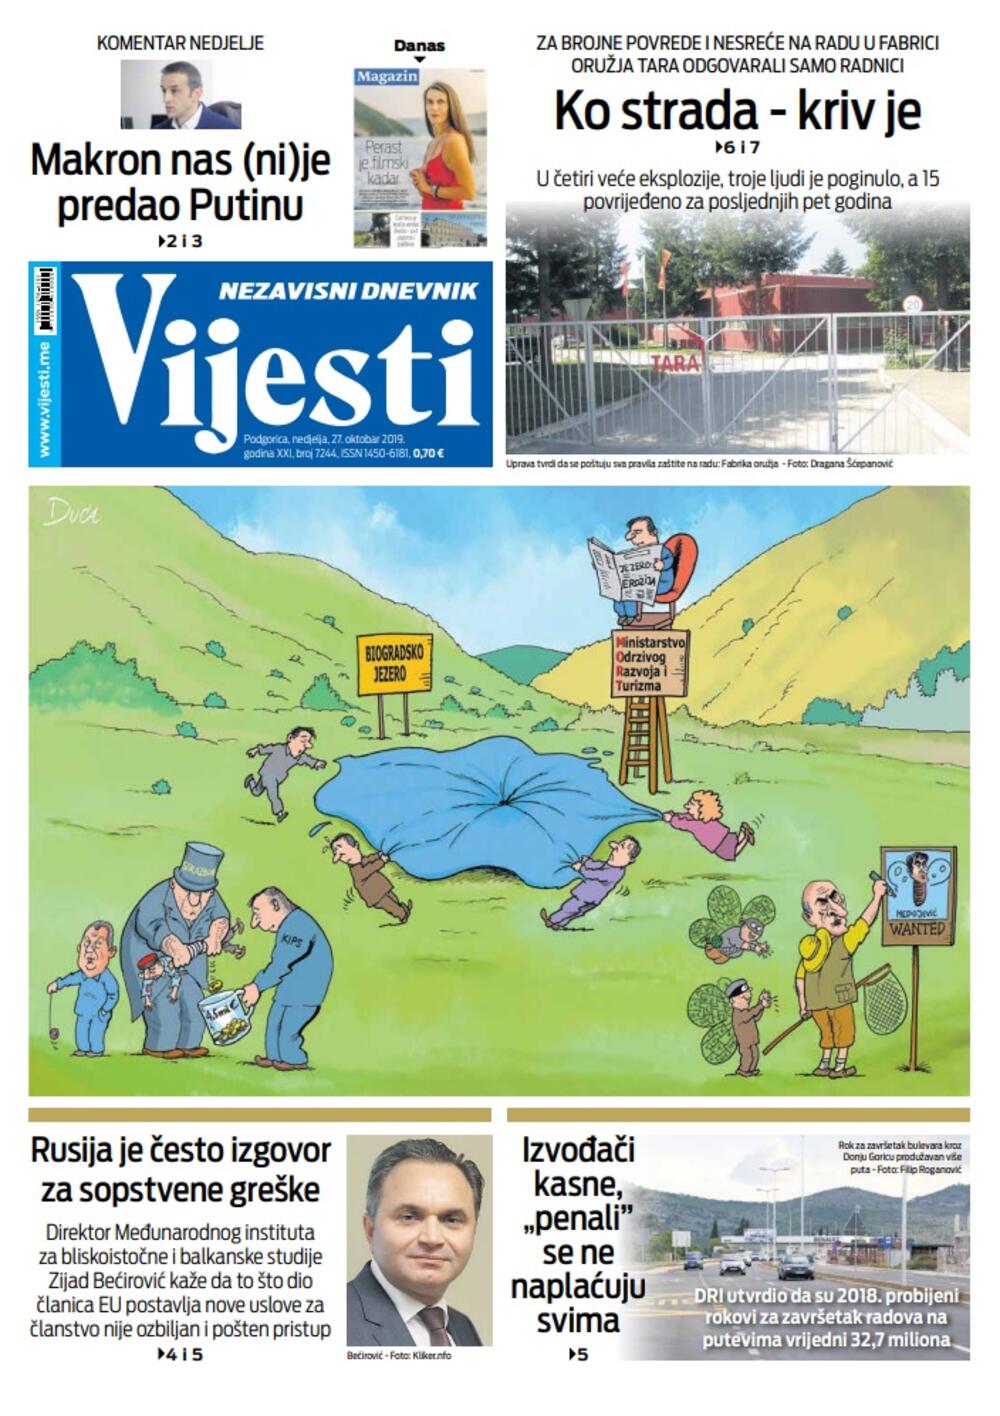 Naslovna strana "Vijesti" za 27. oktobar 2019.